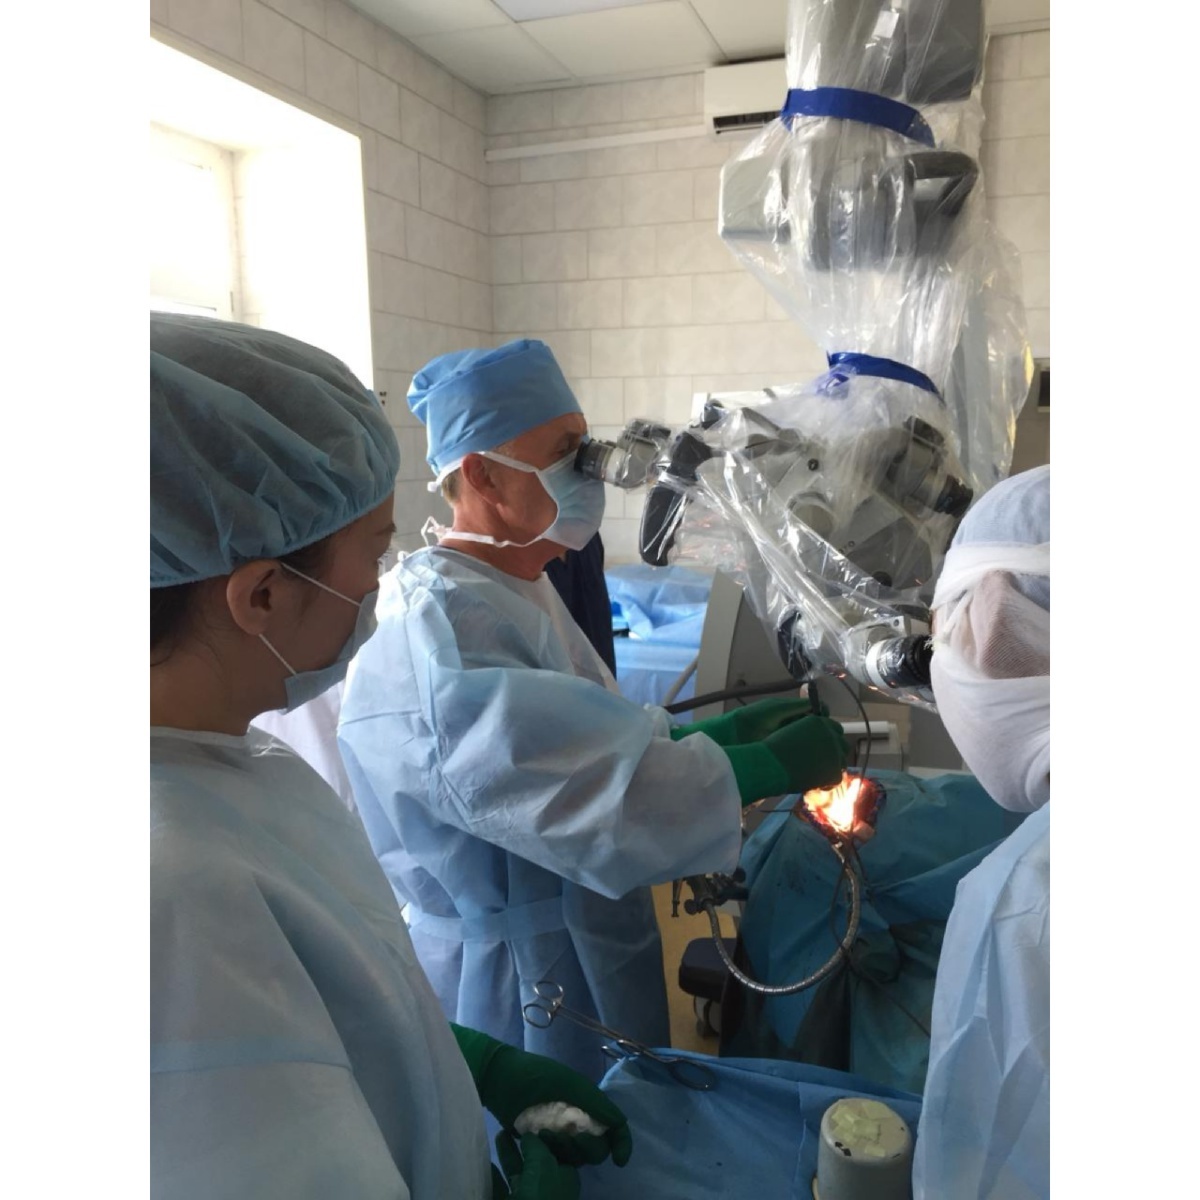 Нейрохирурги РБ №2 – ЦЭМП впервые выполнили ЭИКМА - высокотехнологическую операцию по реконструкции сосудов